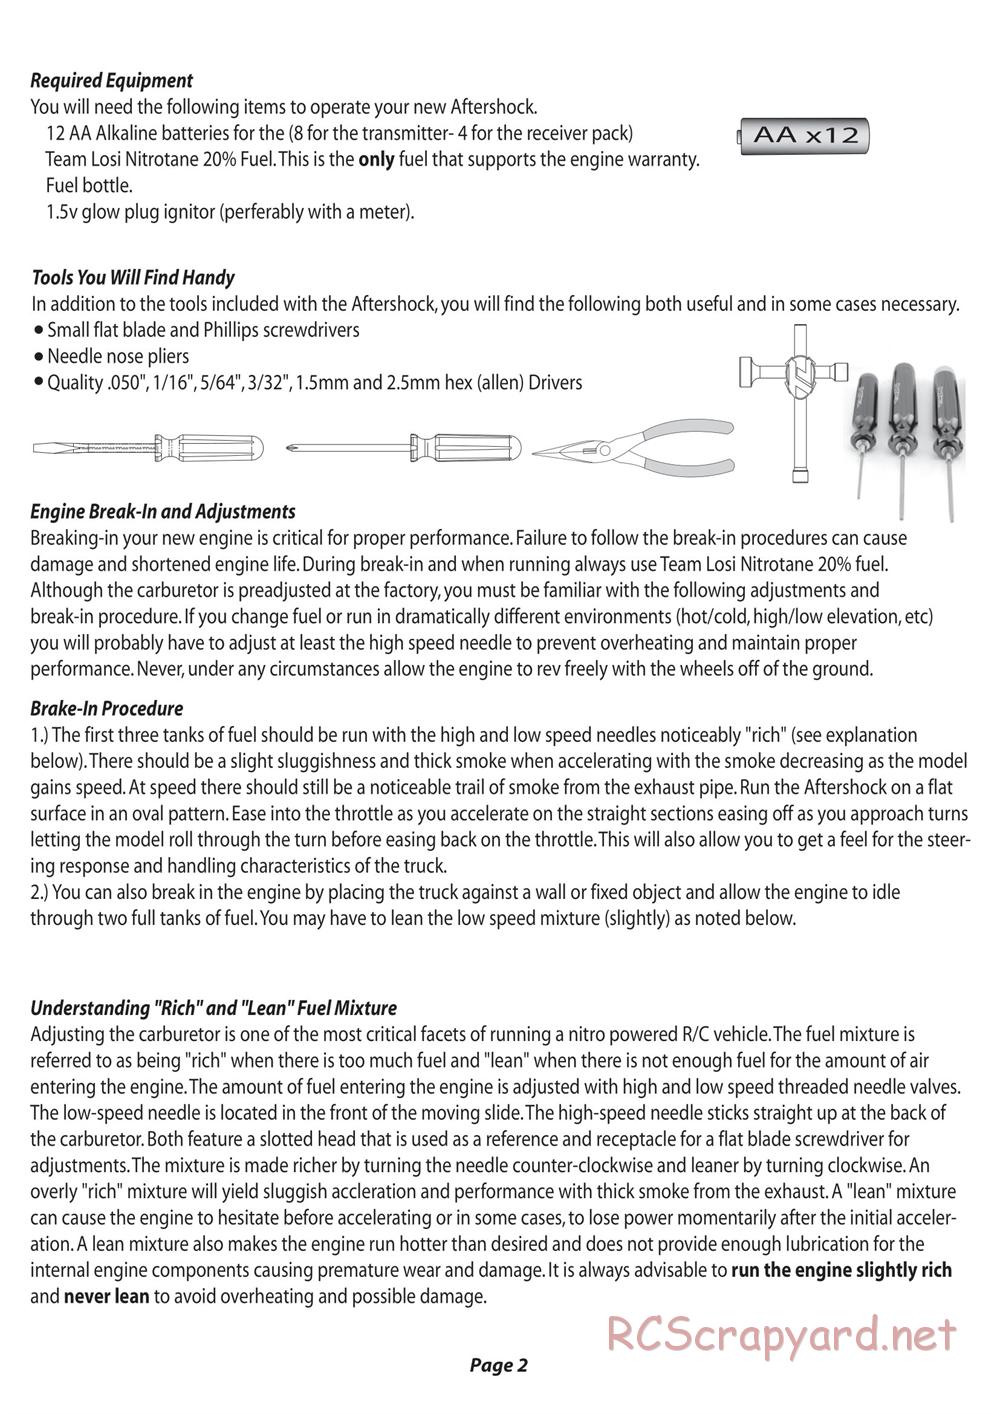 Team Losi - Aftershock - Manual - Page 3